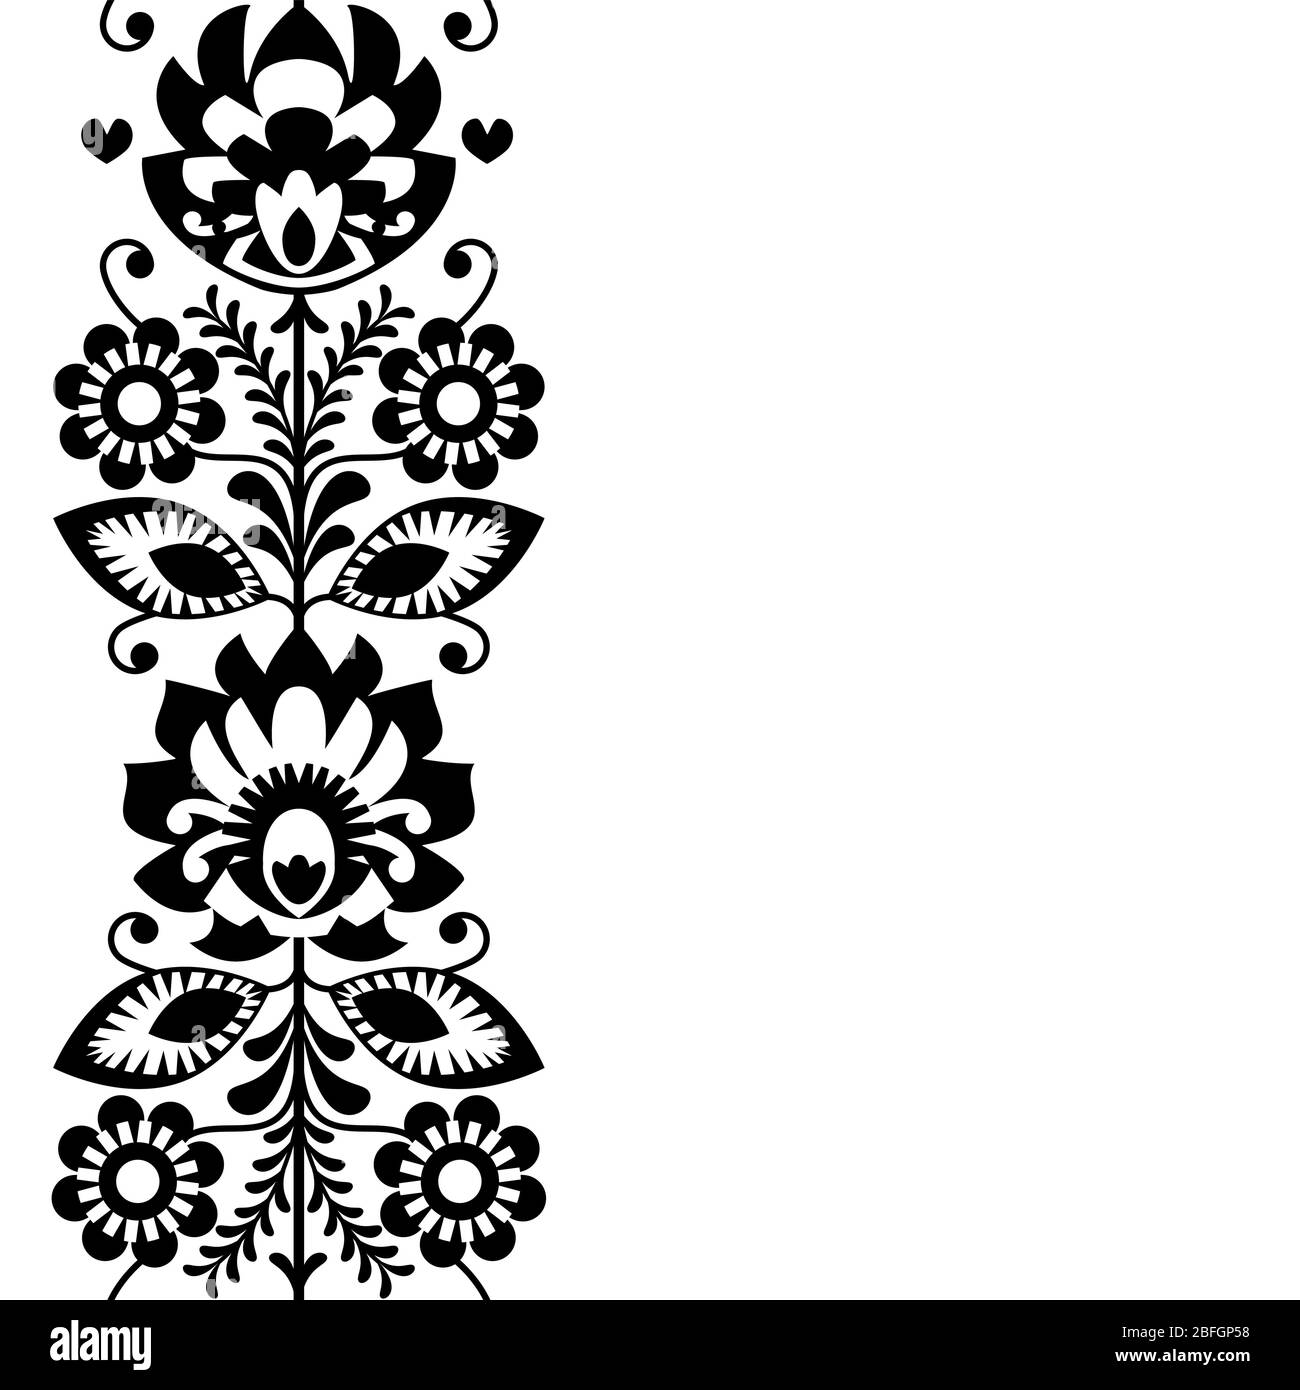 Art folklorique forme Pologne, carte de vœux vectorielle ou invitation - modèle traditionnel polonais avec fleurs - Wycinanki Lowickie Illustration de Vecteur